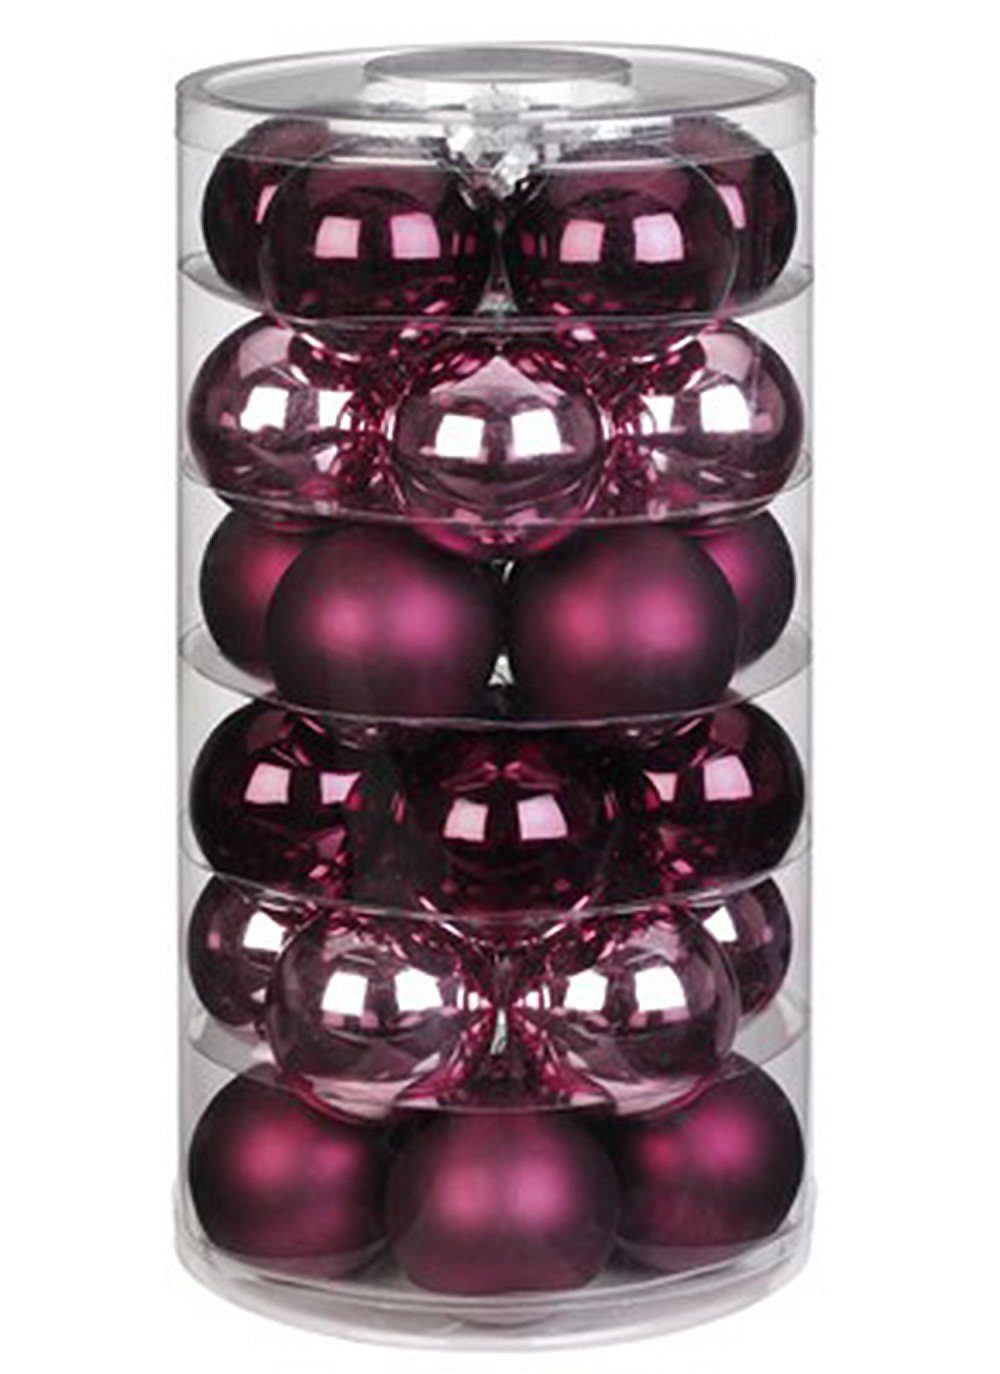 MAGIC by Inge Weihnachtsbaumkugel, Weihnachtskugeln Glas 6cm Berry Kiss, 30 Stück